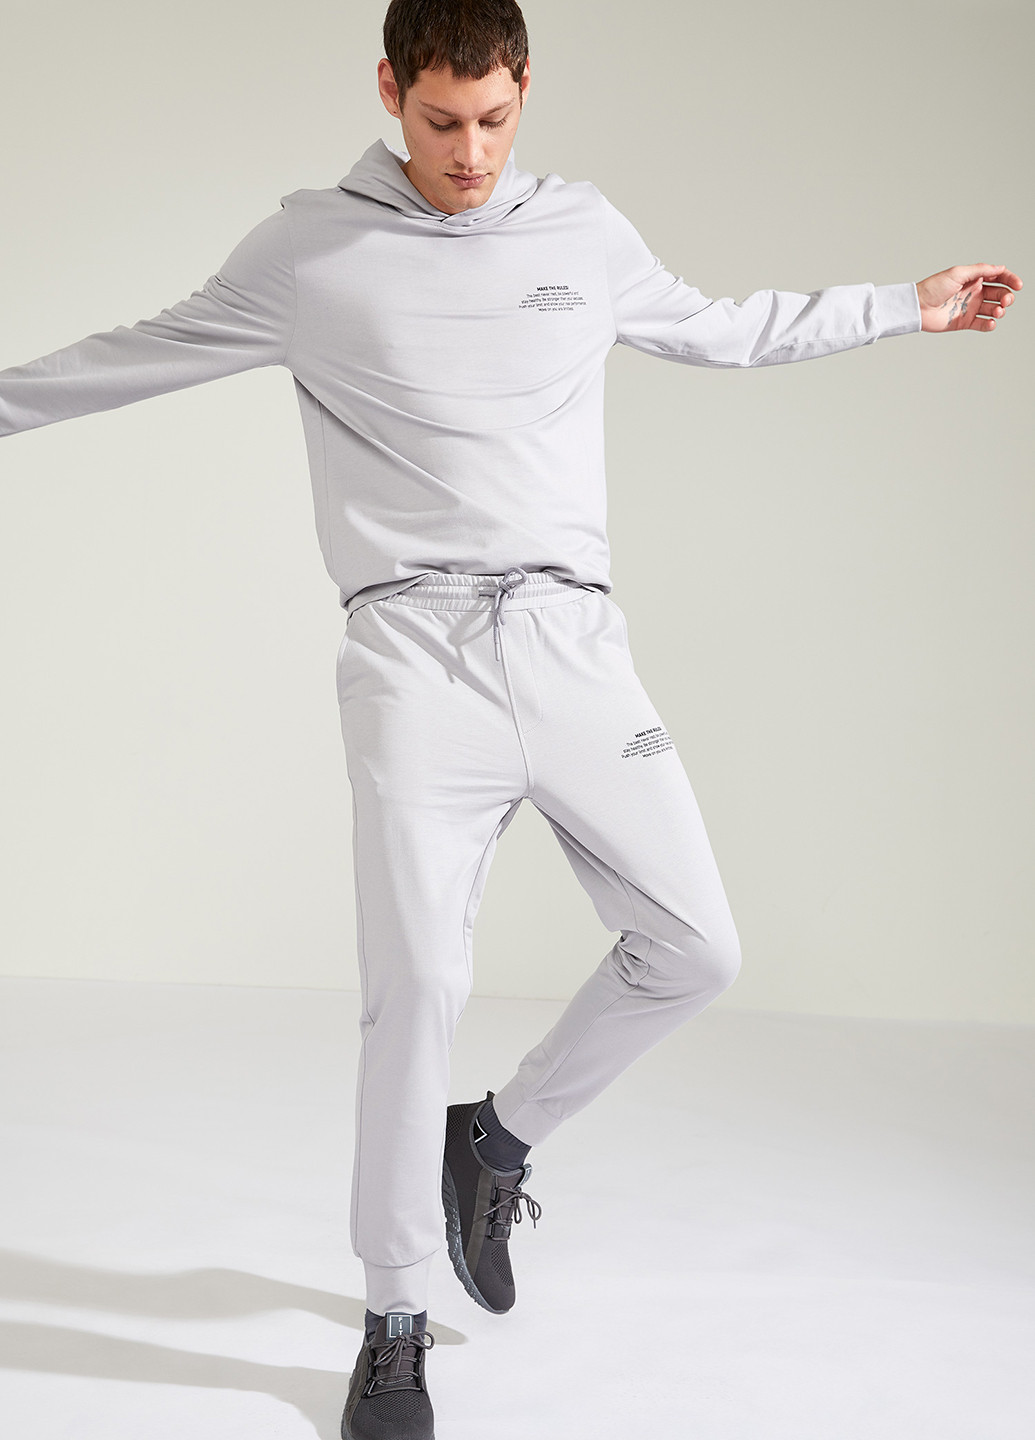 Спортивный костюм(реглан, брюки) DeFacto светло-серые спортивные трикотаж, хлопок